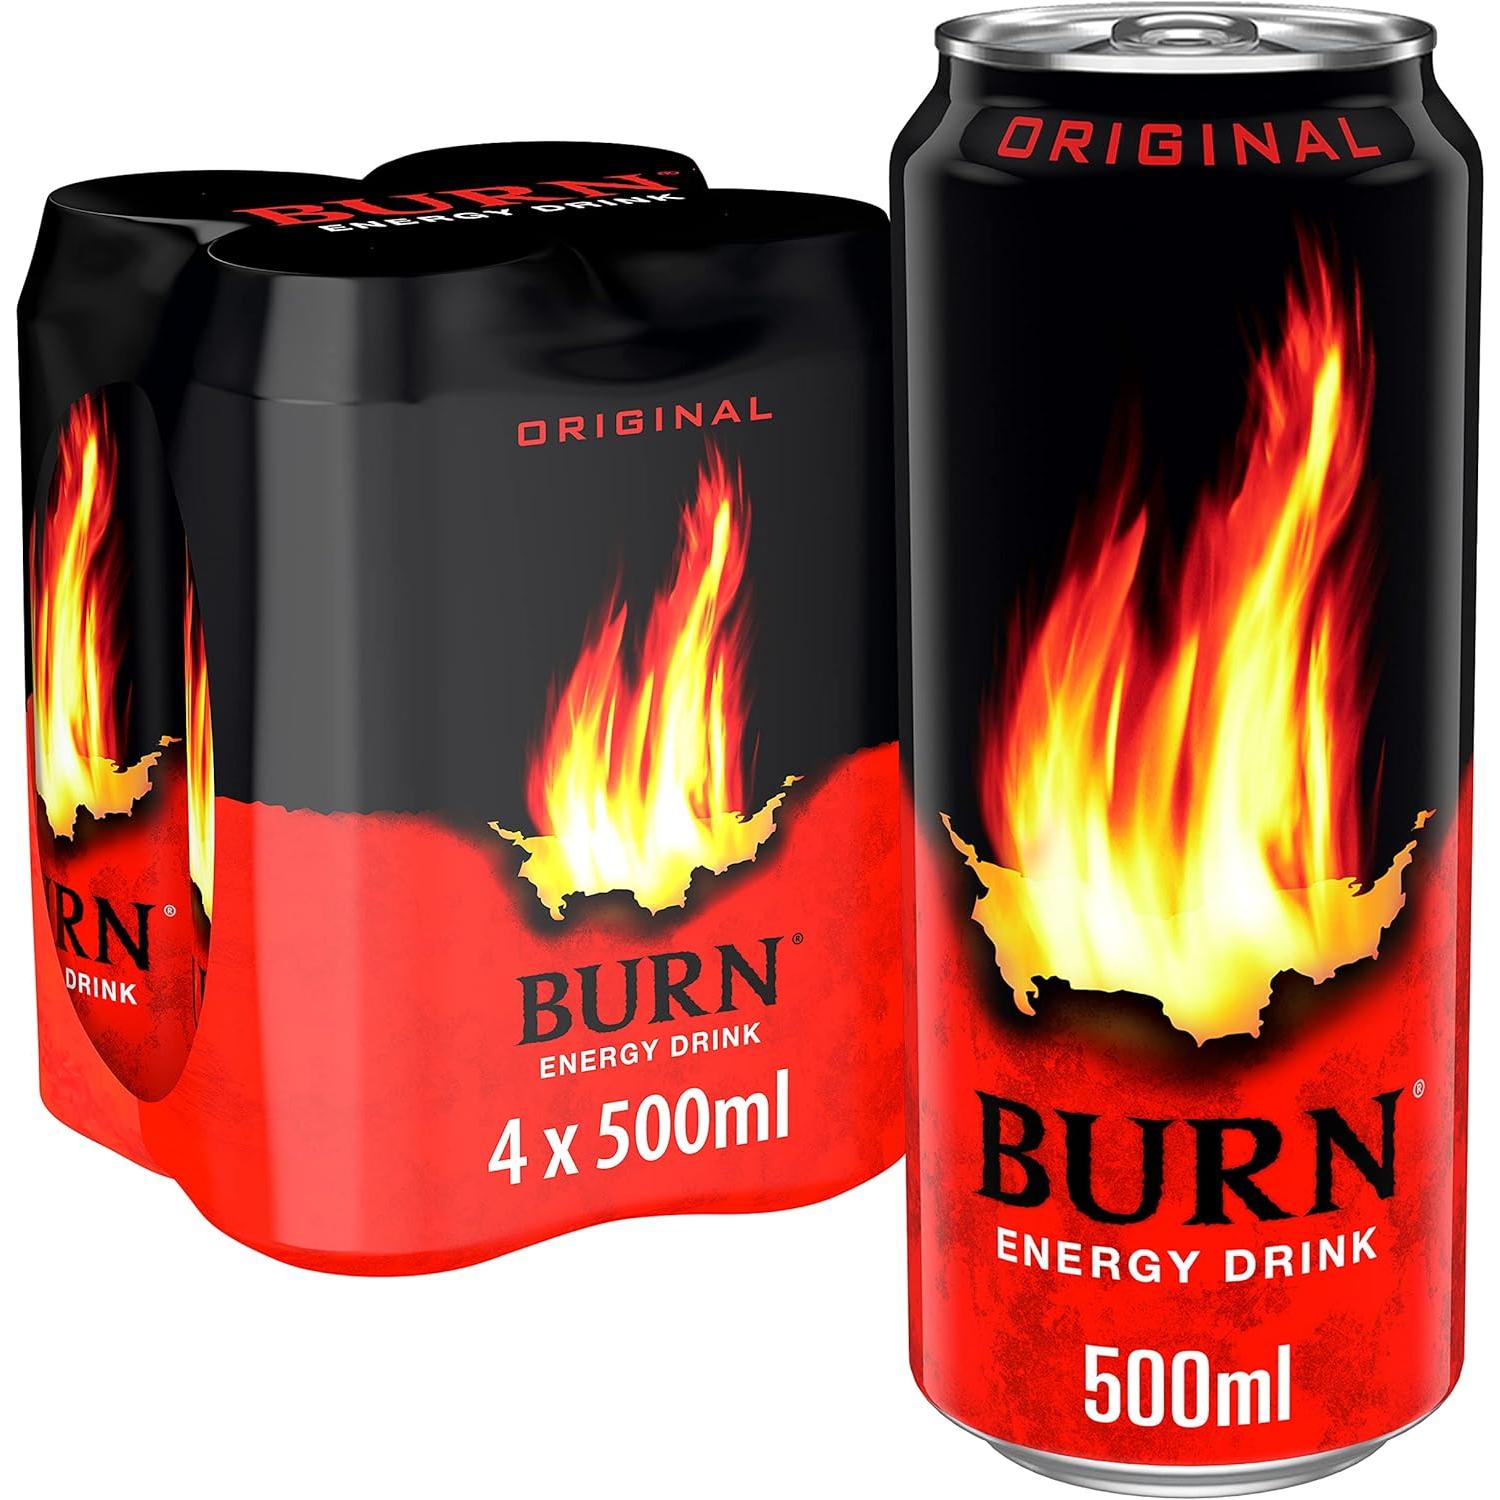 Burn - 